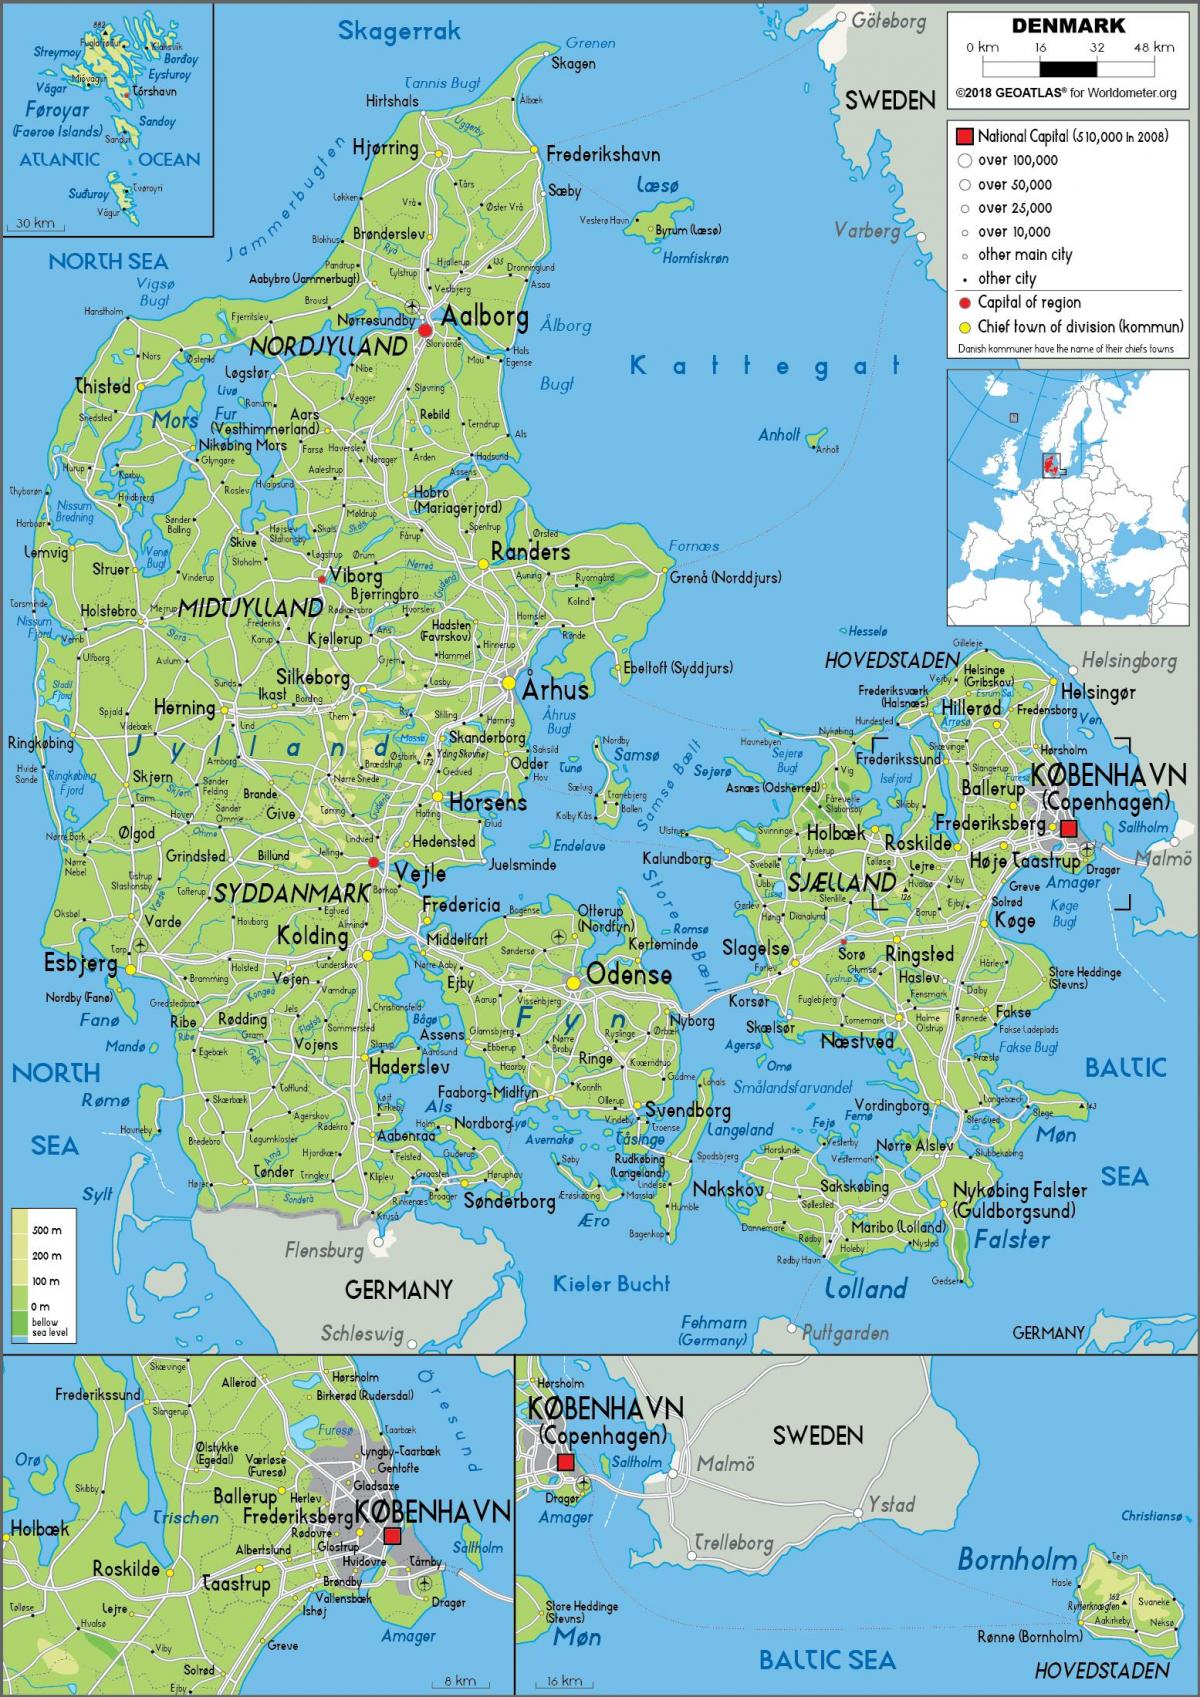 Mapa del relieve de Dinamarca